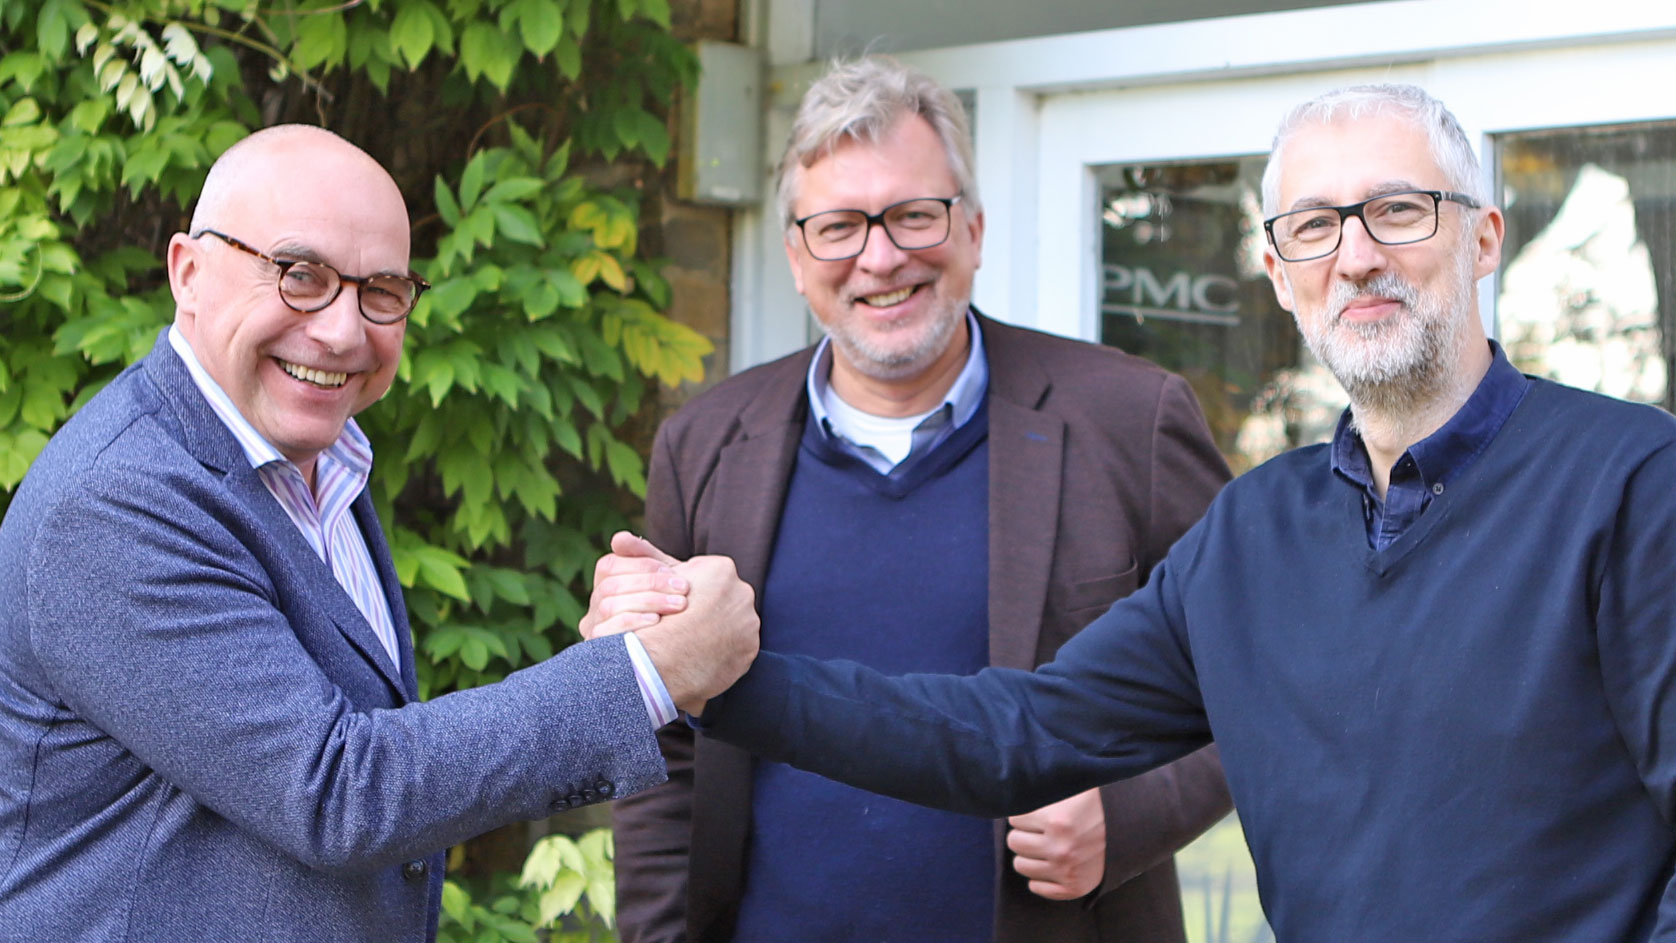 Geschäftsführer Udo Besser (l.) und Harald Feld (Vertrieb, m.) mit Dave Frost, PMC Export Business Development Manager (r.) (Bild: Besser Distribution)